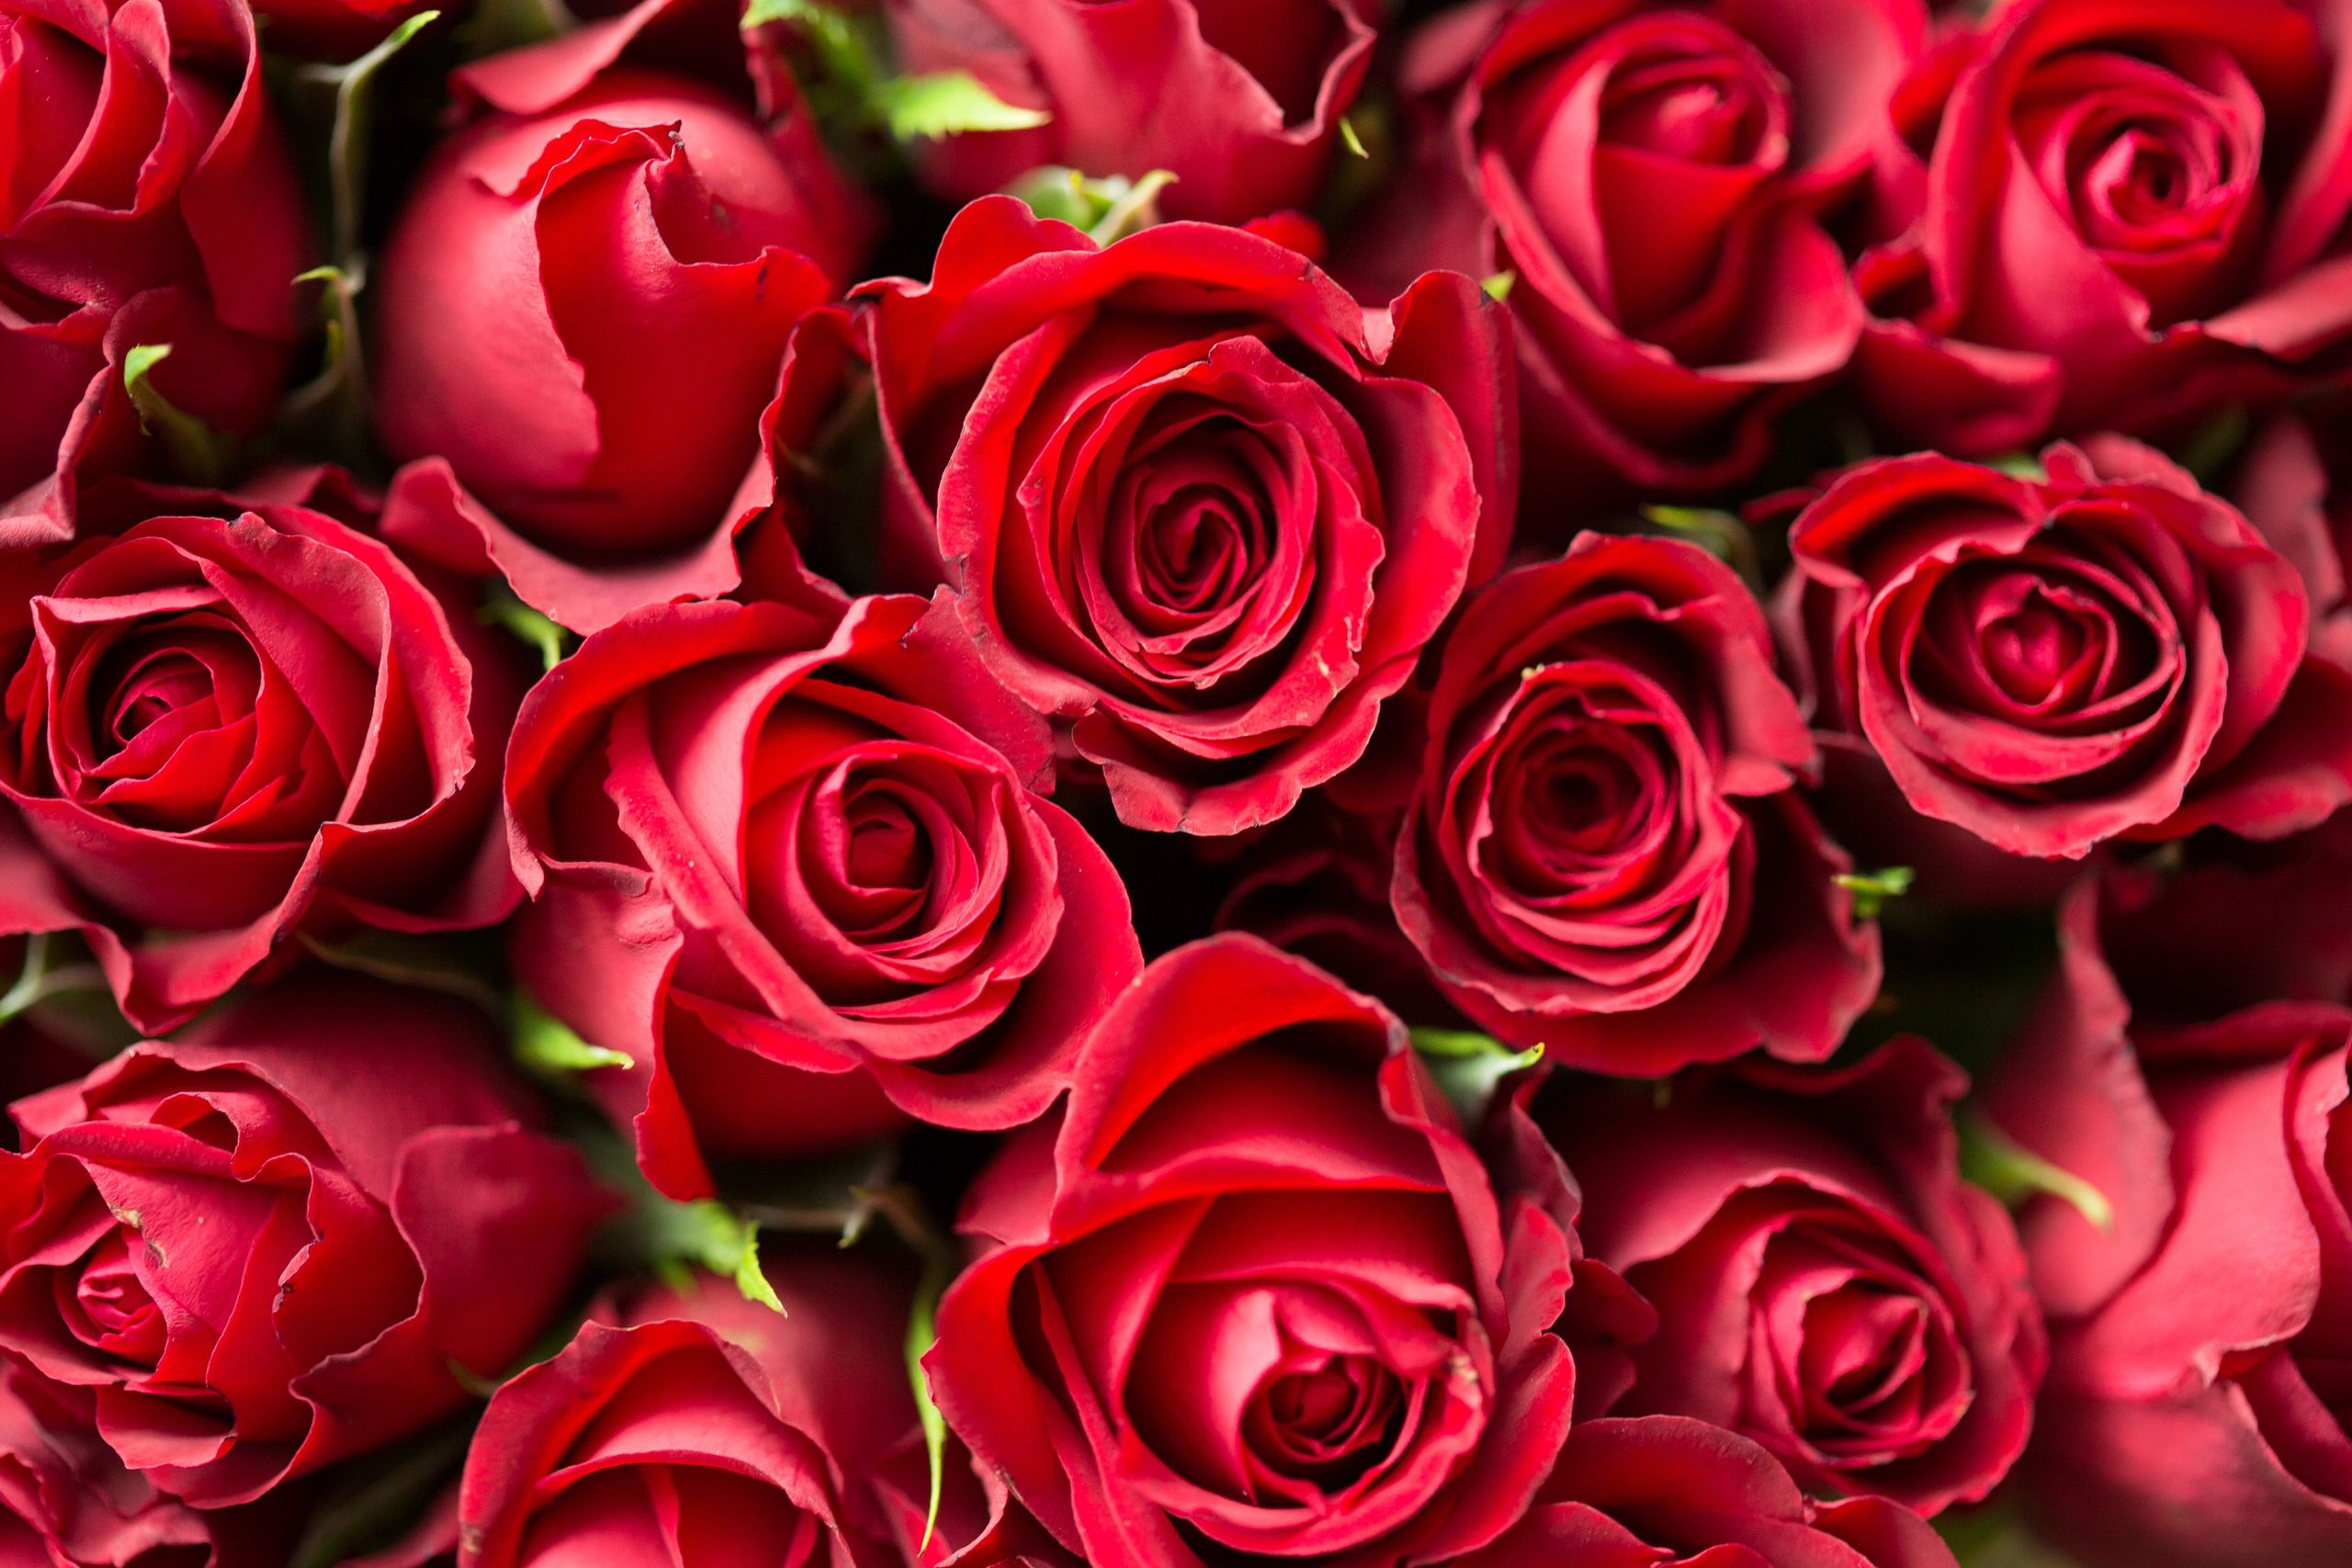 Floricultores se preparan para incremento en la demanda por Día del Amor y la Amistad